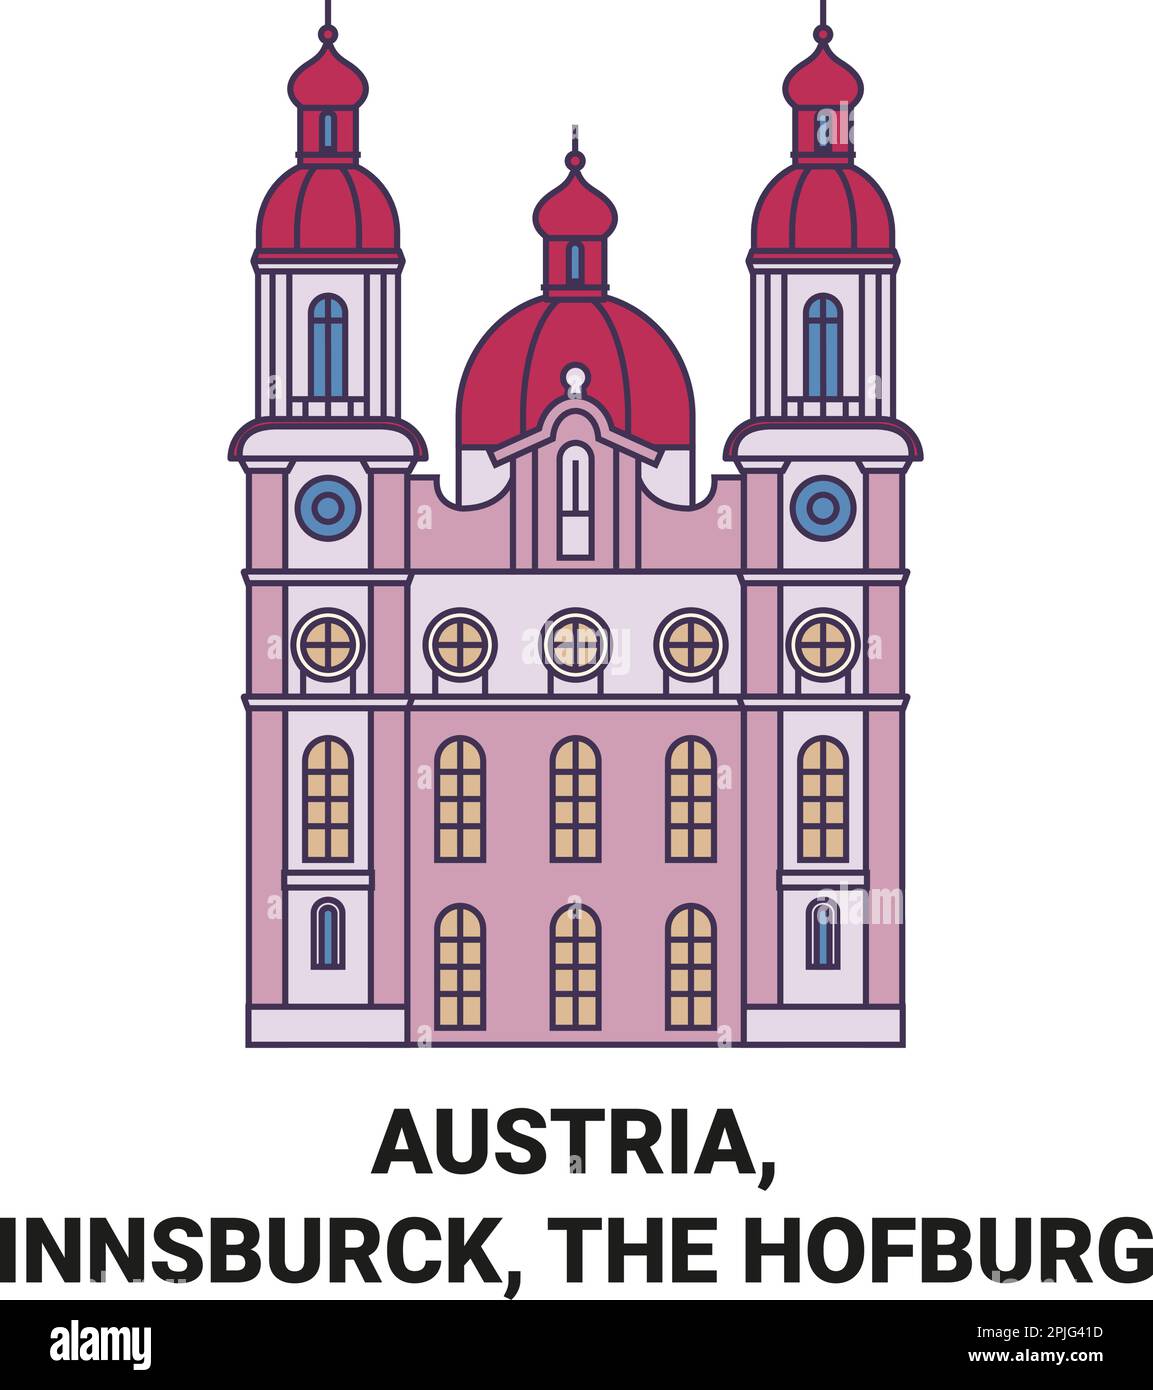 Österreich, Innsburck, die Hofburg Reise-Wahrzeichen-Vektordarstellung Stock Vektor